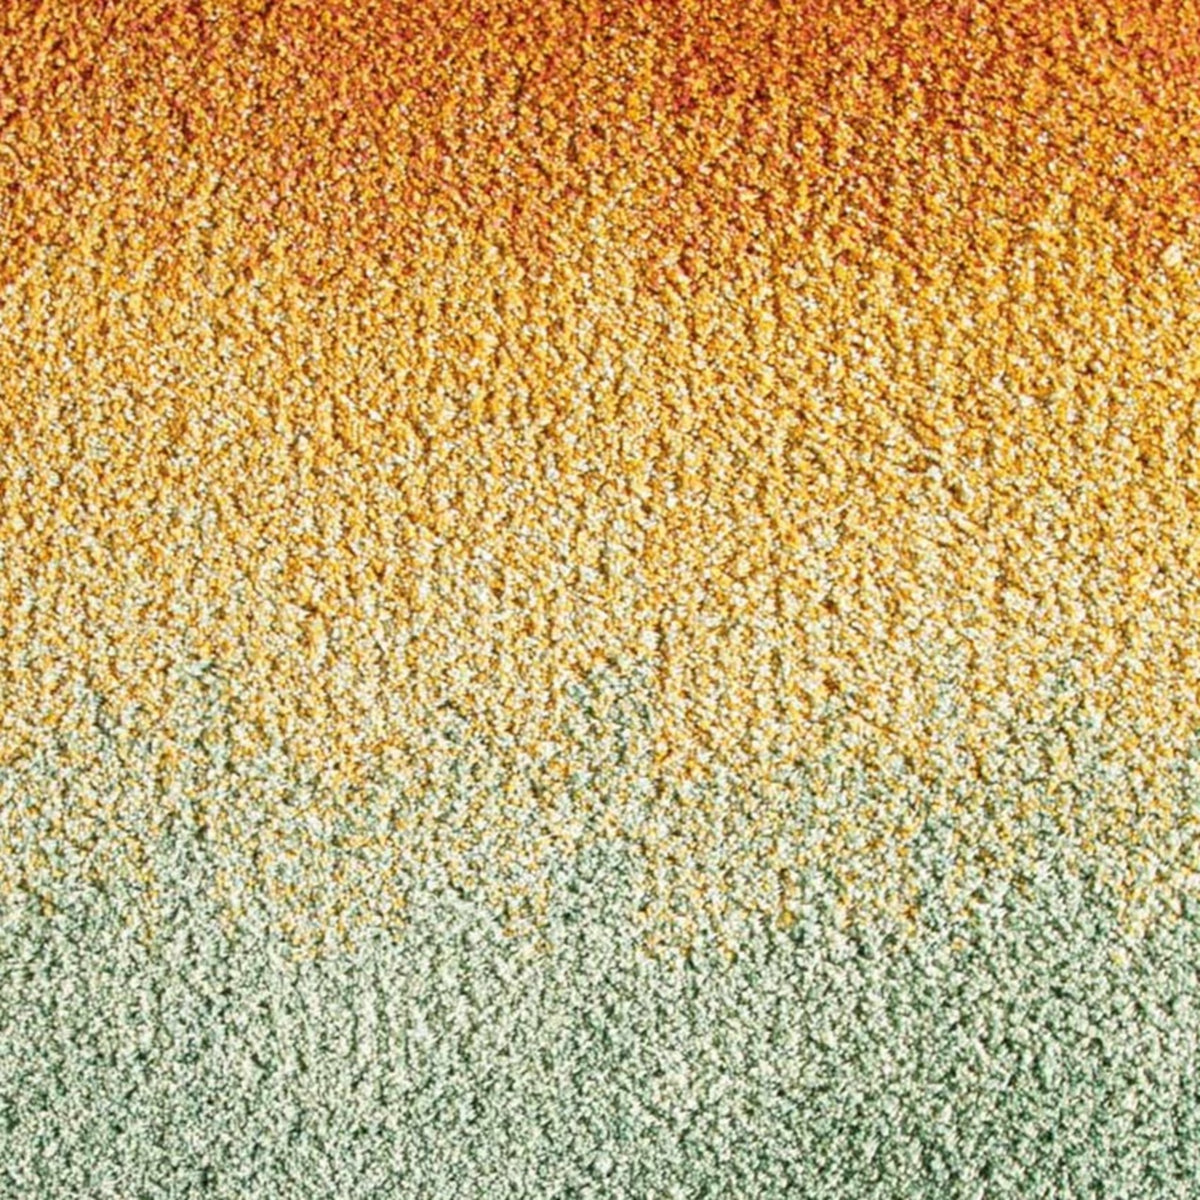 Swatch Sample of Graccioza Sunrise Bath Rugs in Multicolor 2